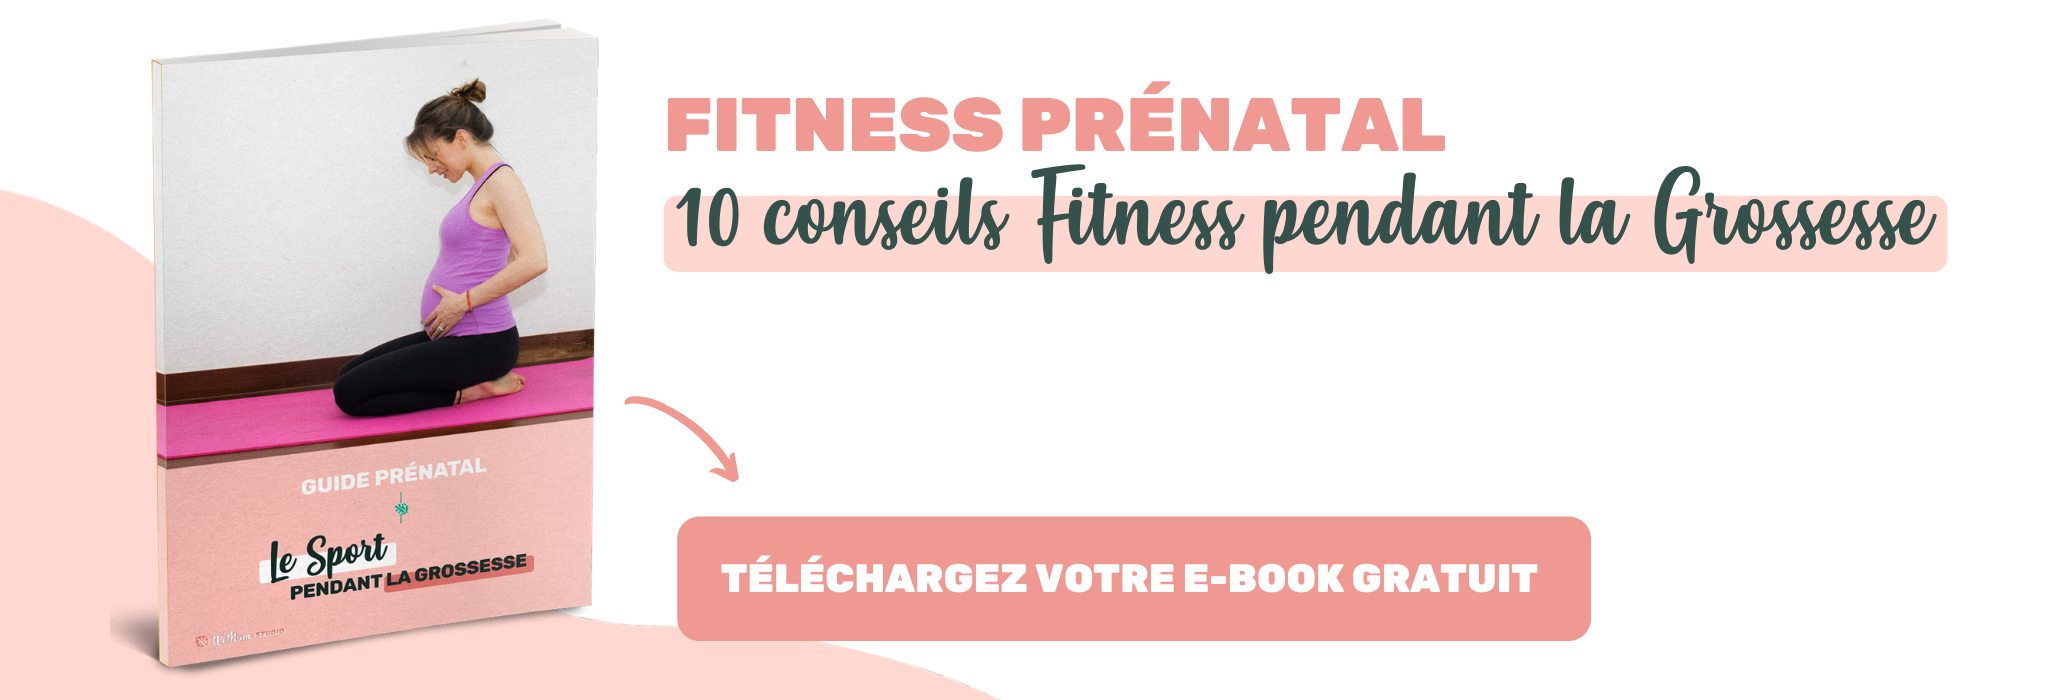 Les meilleurs conseils pour une activité physique adaptée et en toute sécurité, pendant votre grossesse.